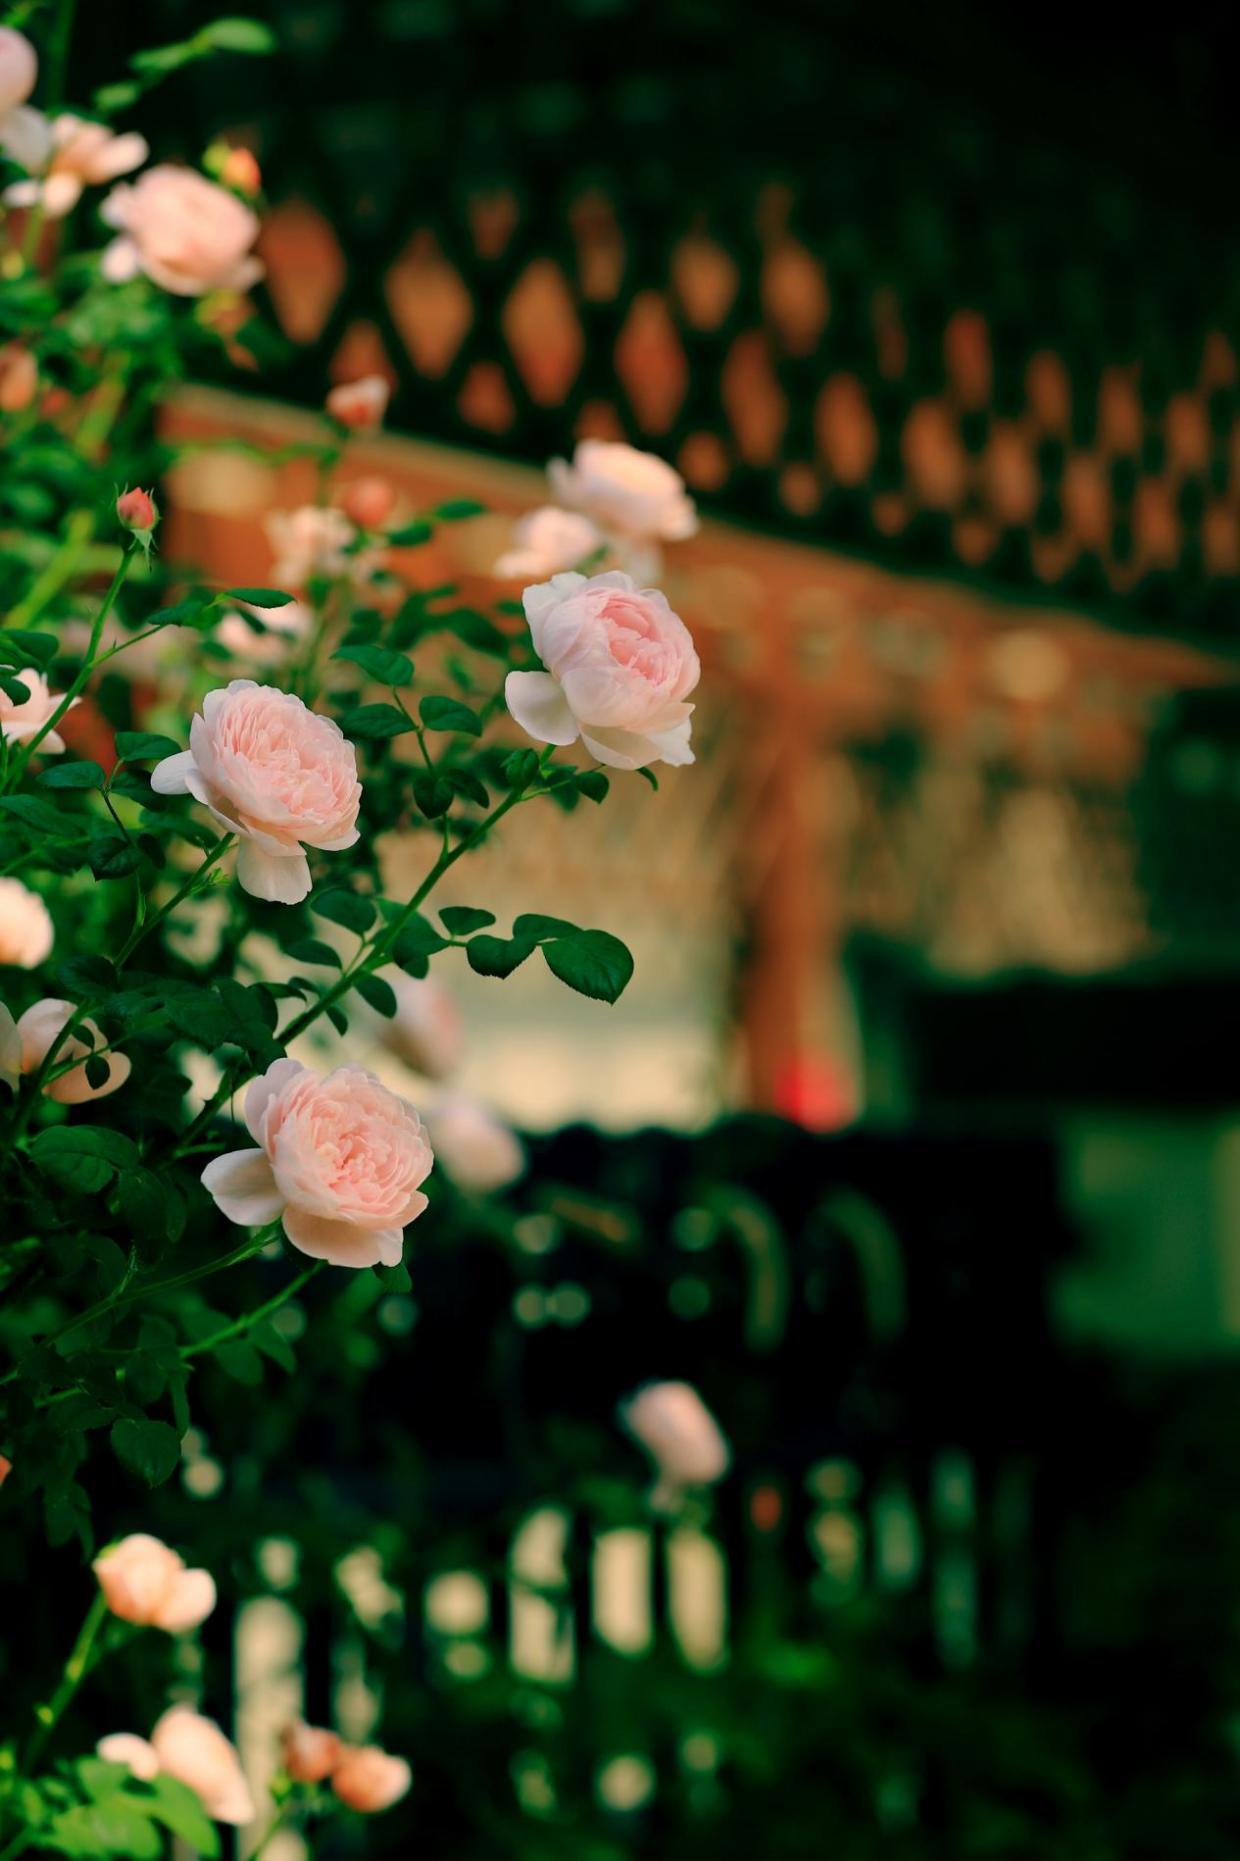 院外盛开着娇艳欲滴的蔷薇。辛崇志 摄